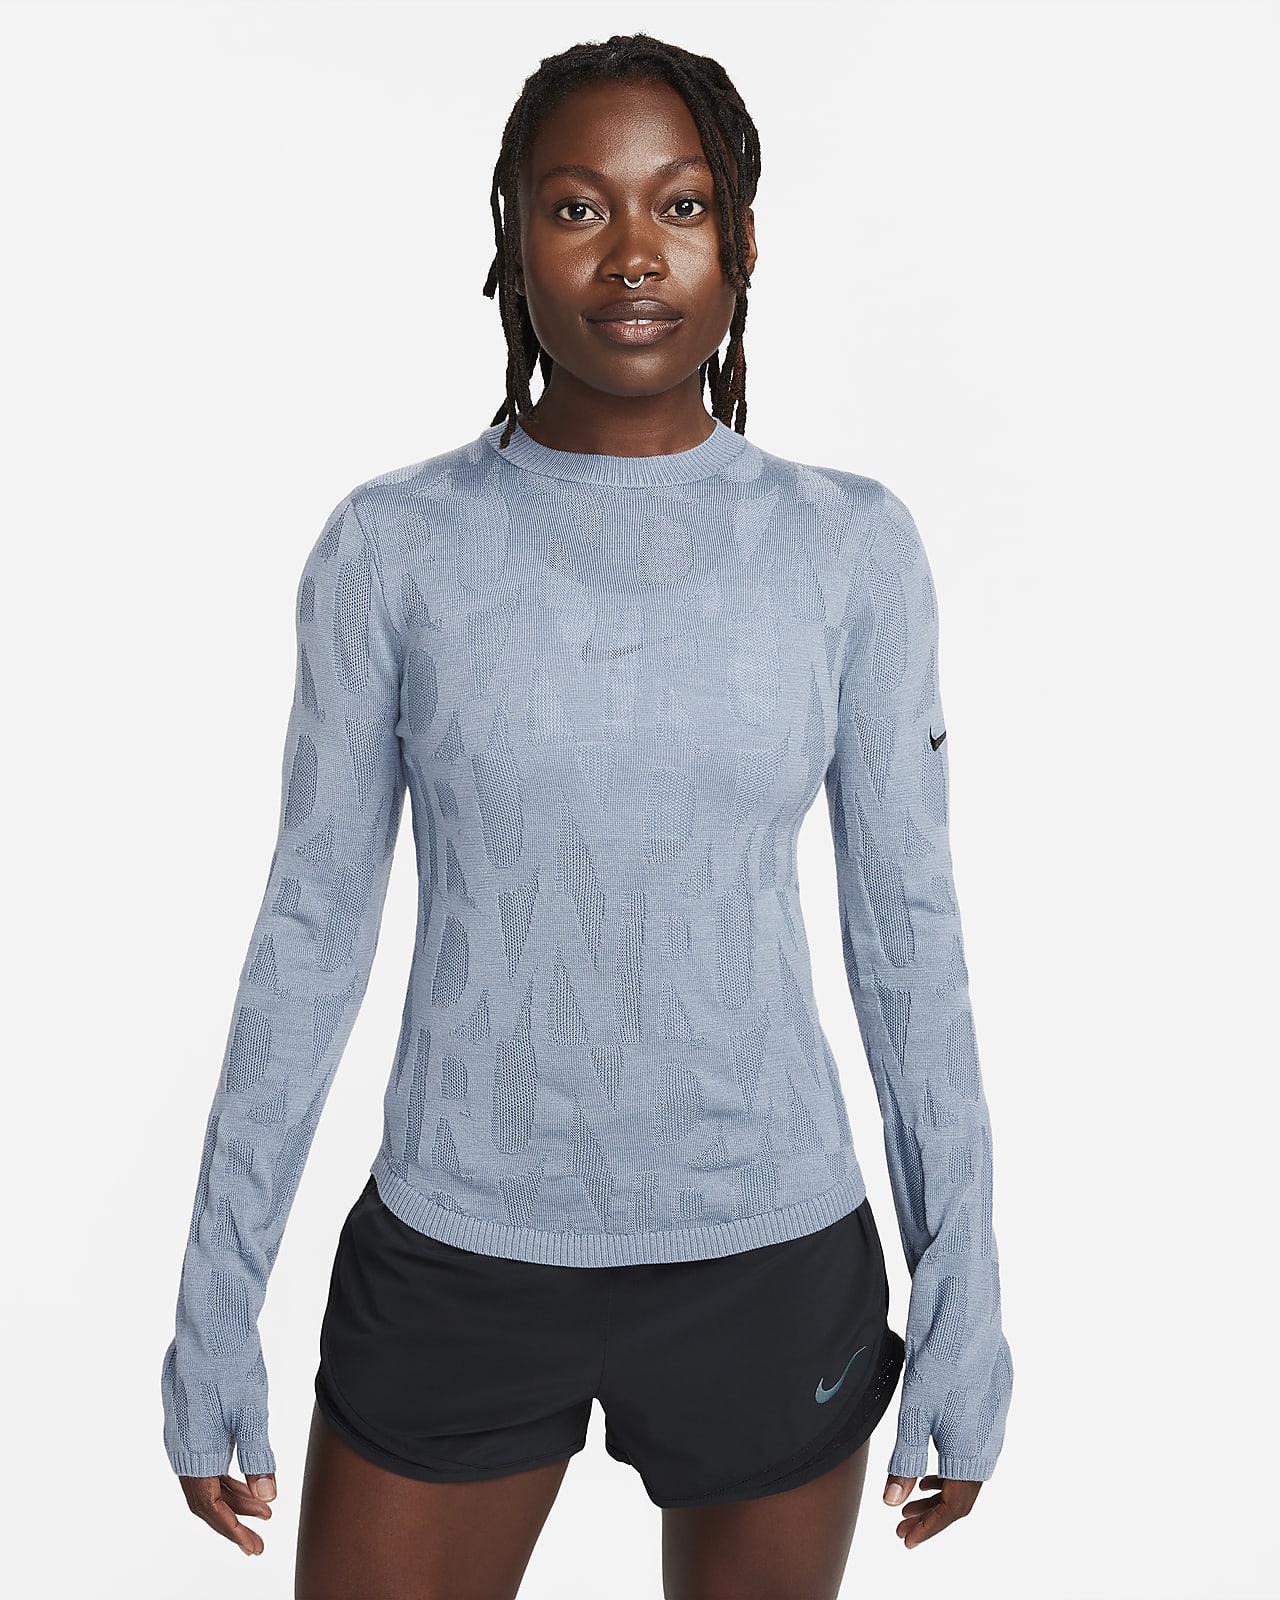 Γυναικείο ενδιάμεσο ρούχο για τρέξιμο Nike Running Division